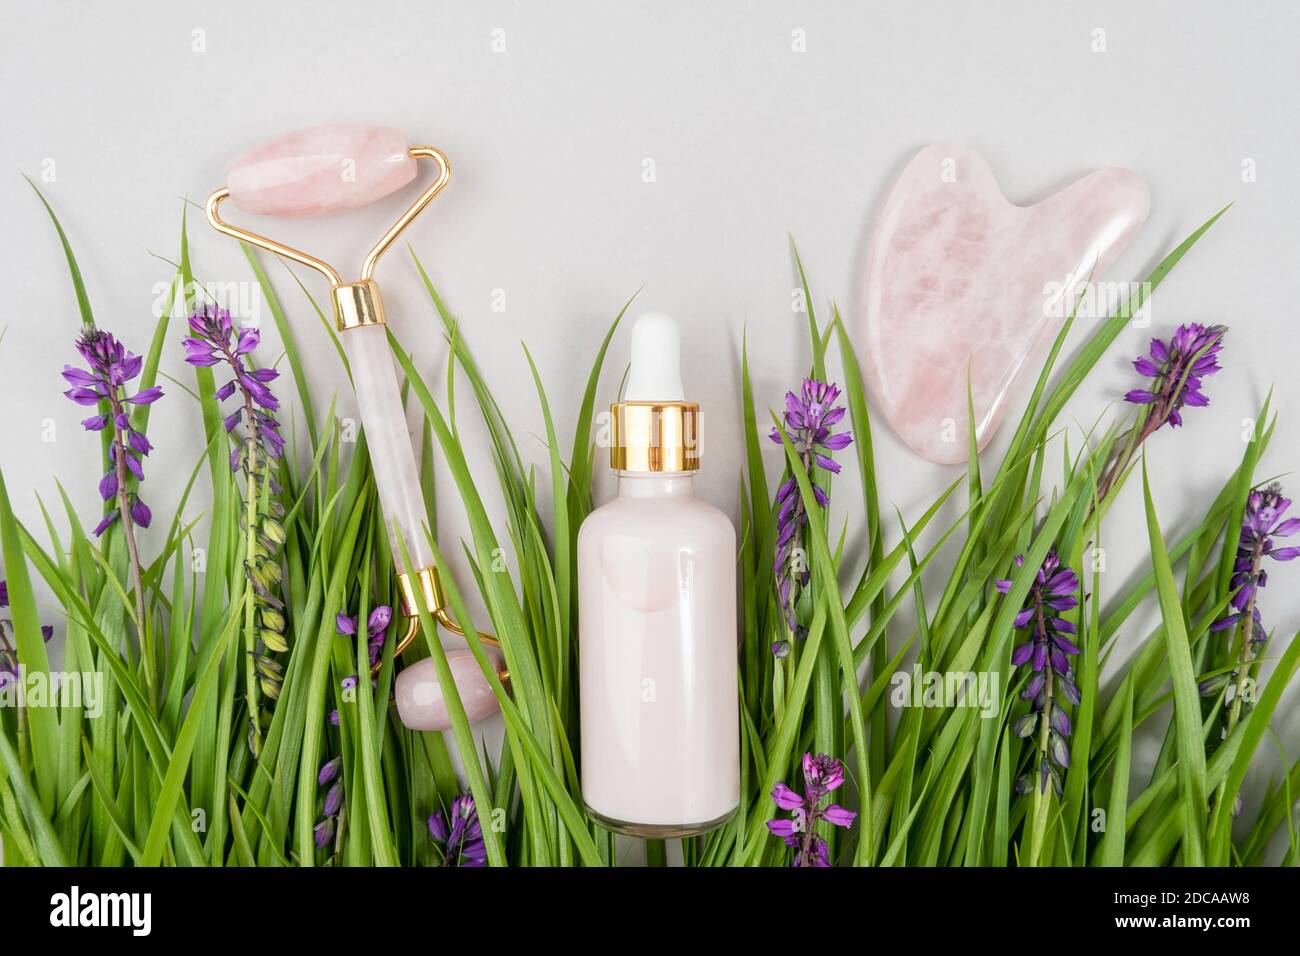 Rouleau facial en quartz rose cristal, outil de massage Gua sha et collagène anti-âge, sérum en bouteille de verre parmi l'herbe verte, fleurs violettes. M du visage Banque D'Images